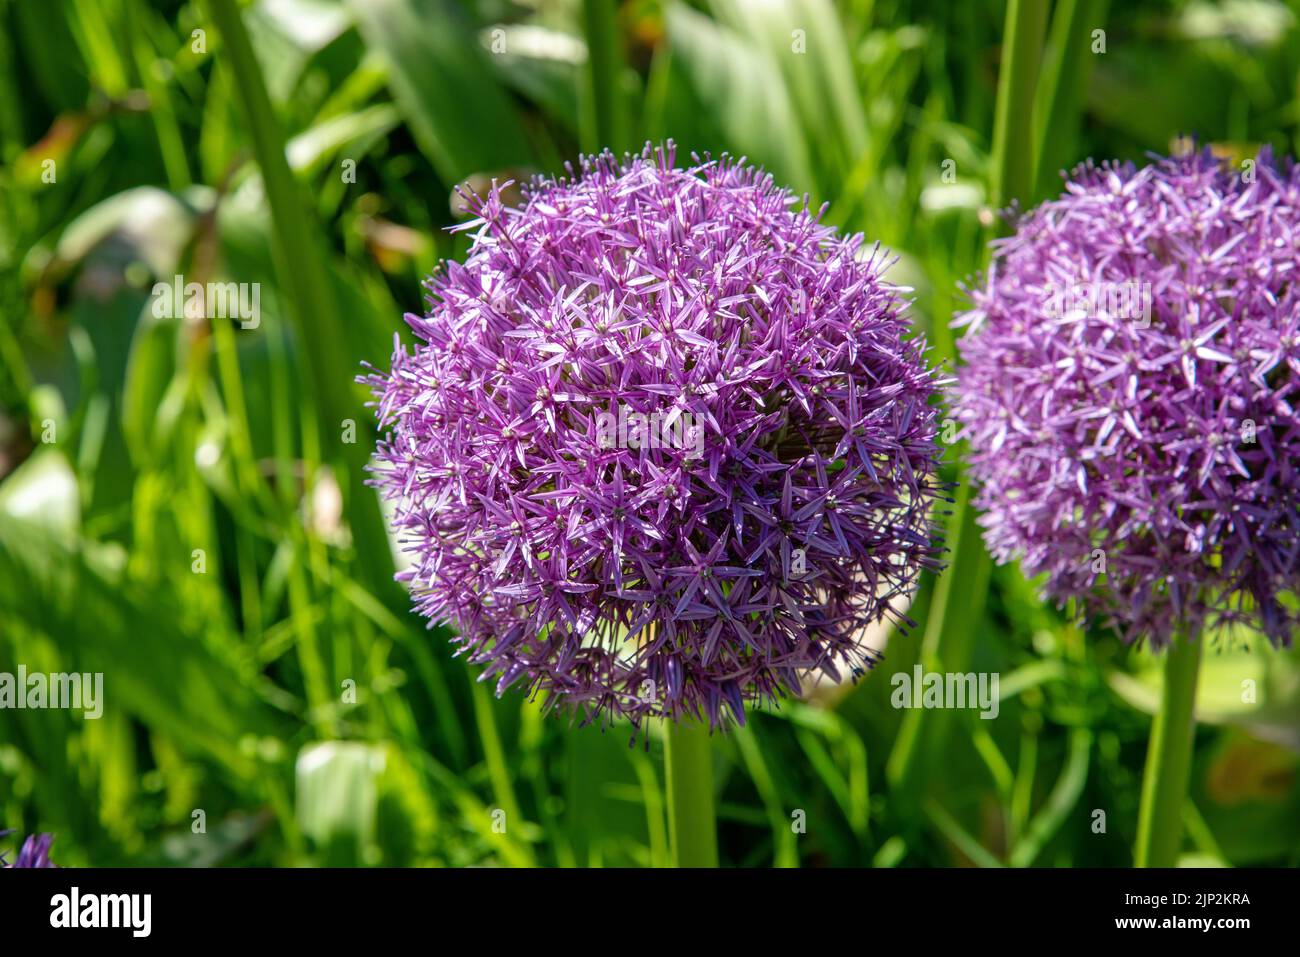 allium, allium flower, alliums, allium flowers Stock Photo